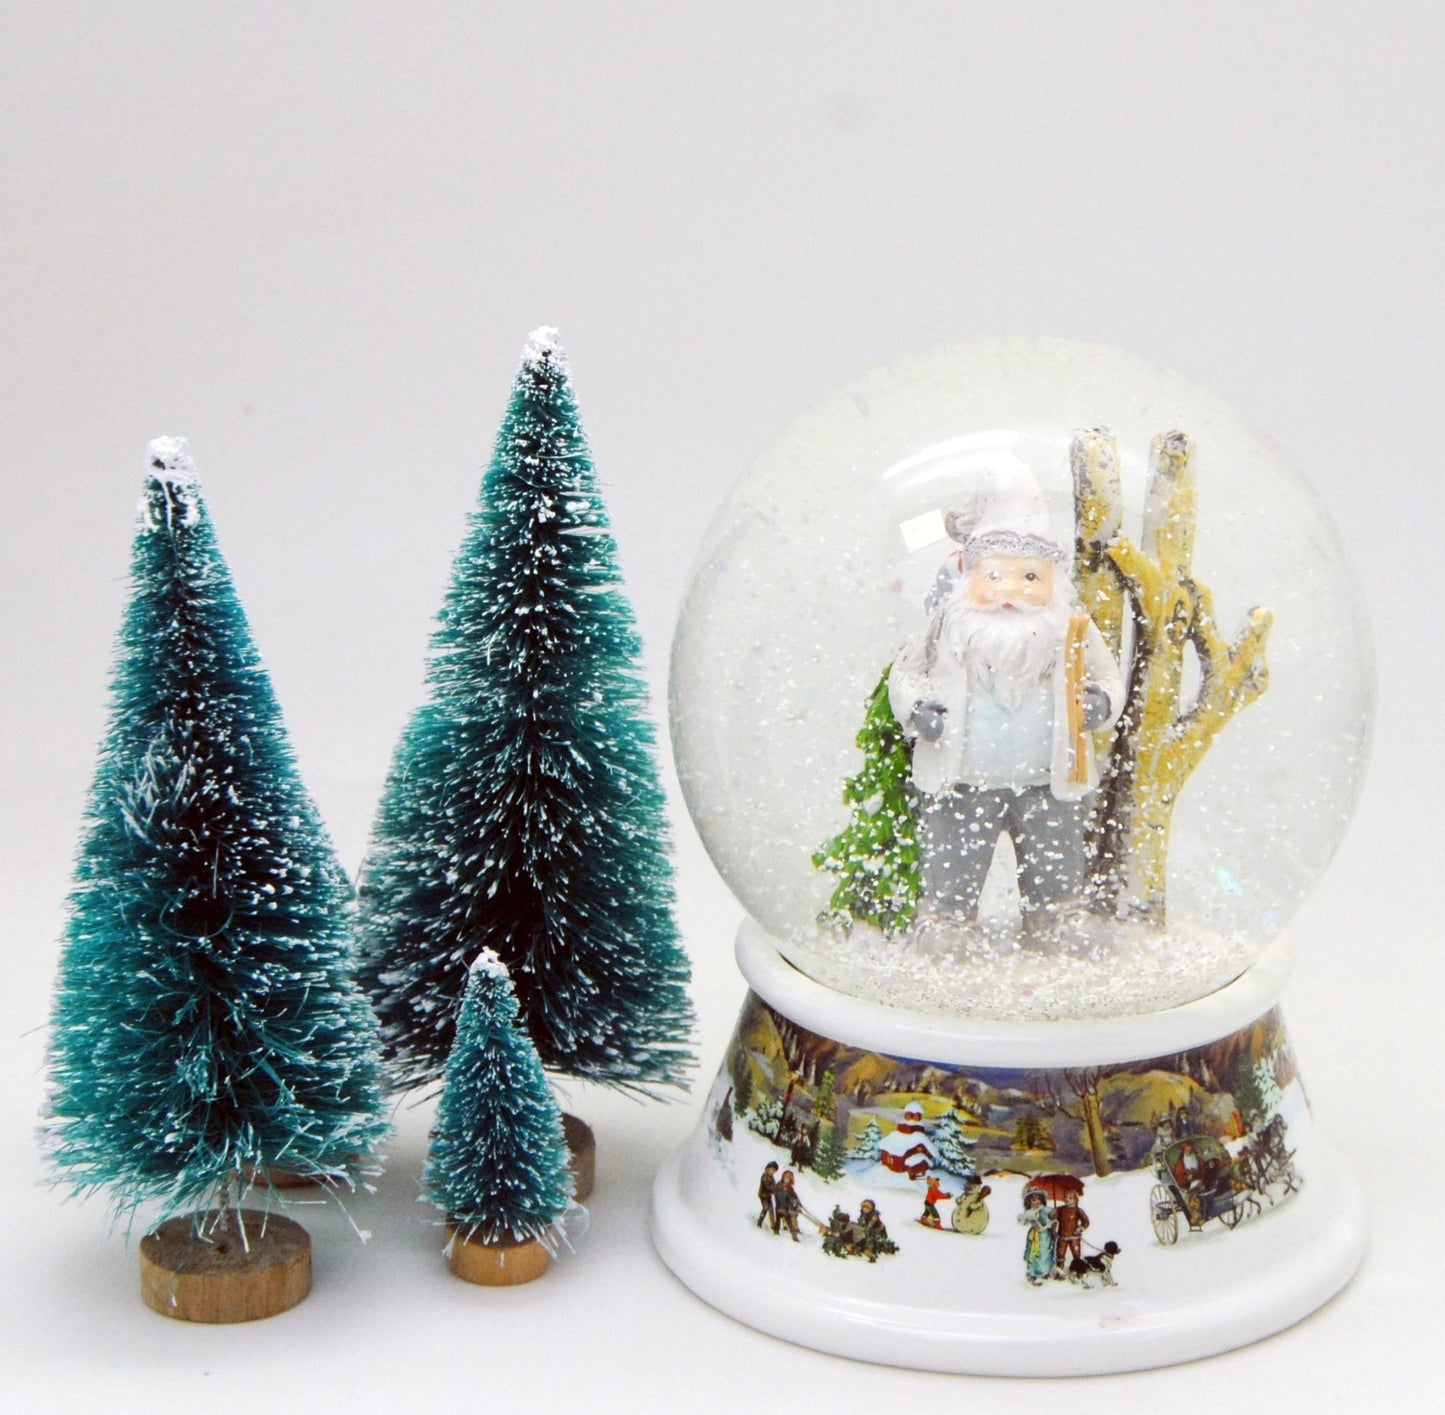 Schneekugel Santa weiß im Winterwald auf Sockel nostalgische Winterlandschaft mit Spieluhr 10 cm Durchmesser - Schneekugelhaus